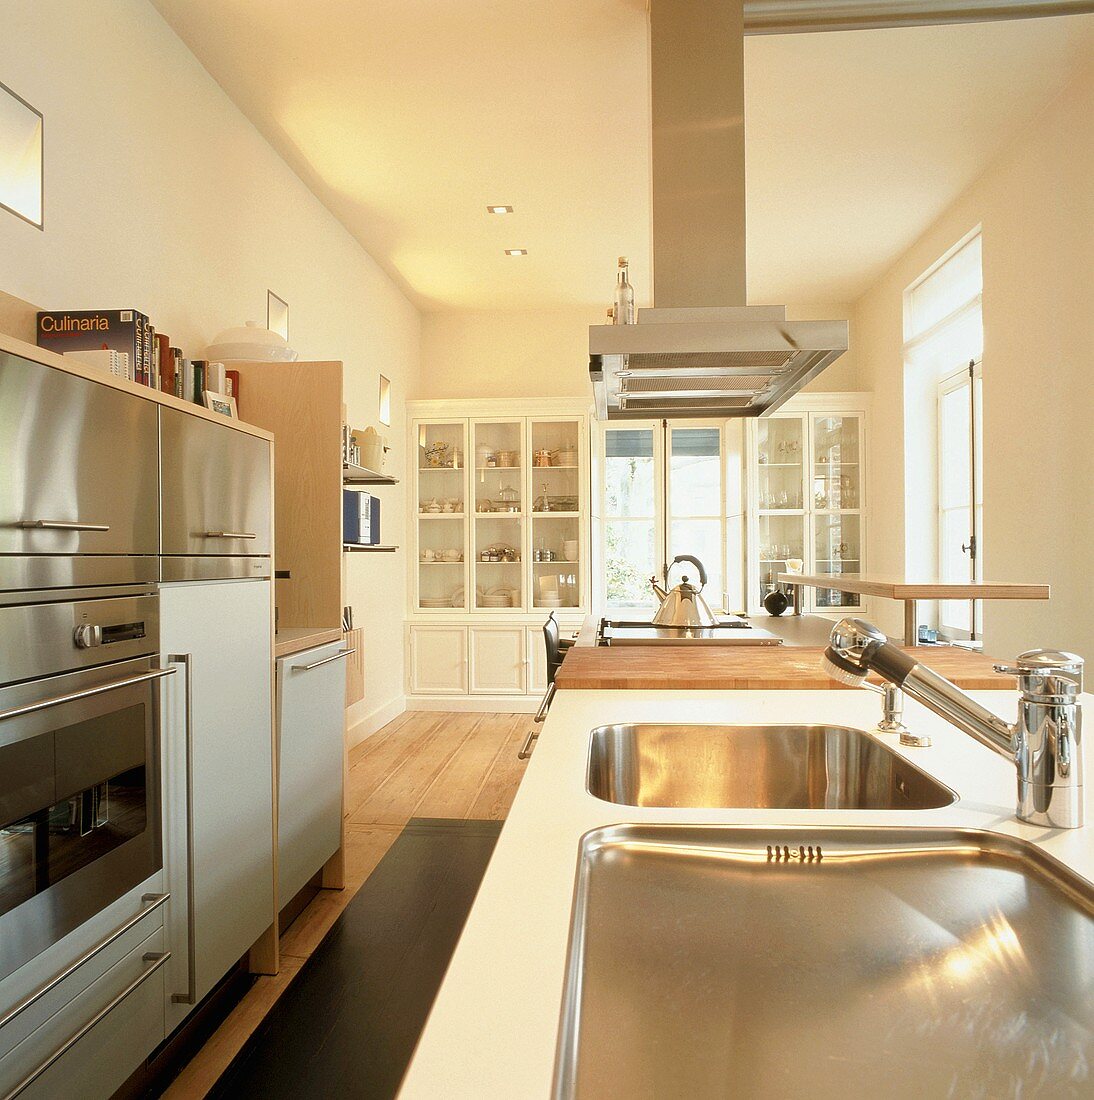 Moderne, gut ausgestattete Küche mit Vitrinenschränken im Hintergrund und Küchengeräten mit Edelstahlfronten